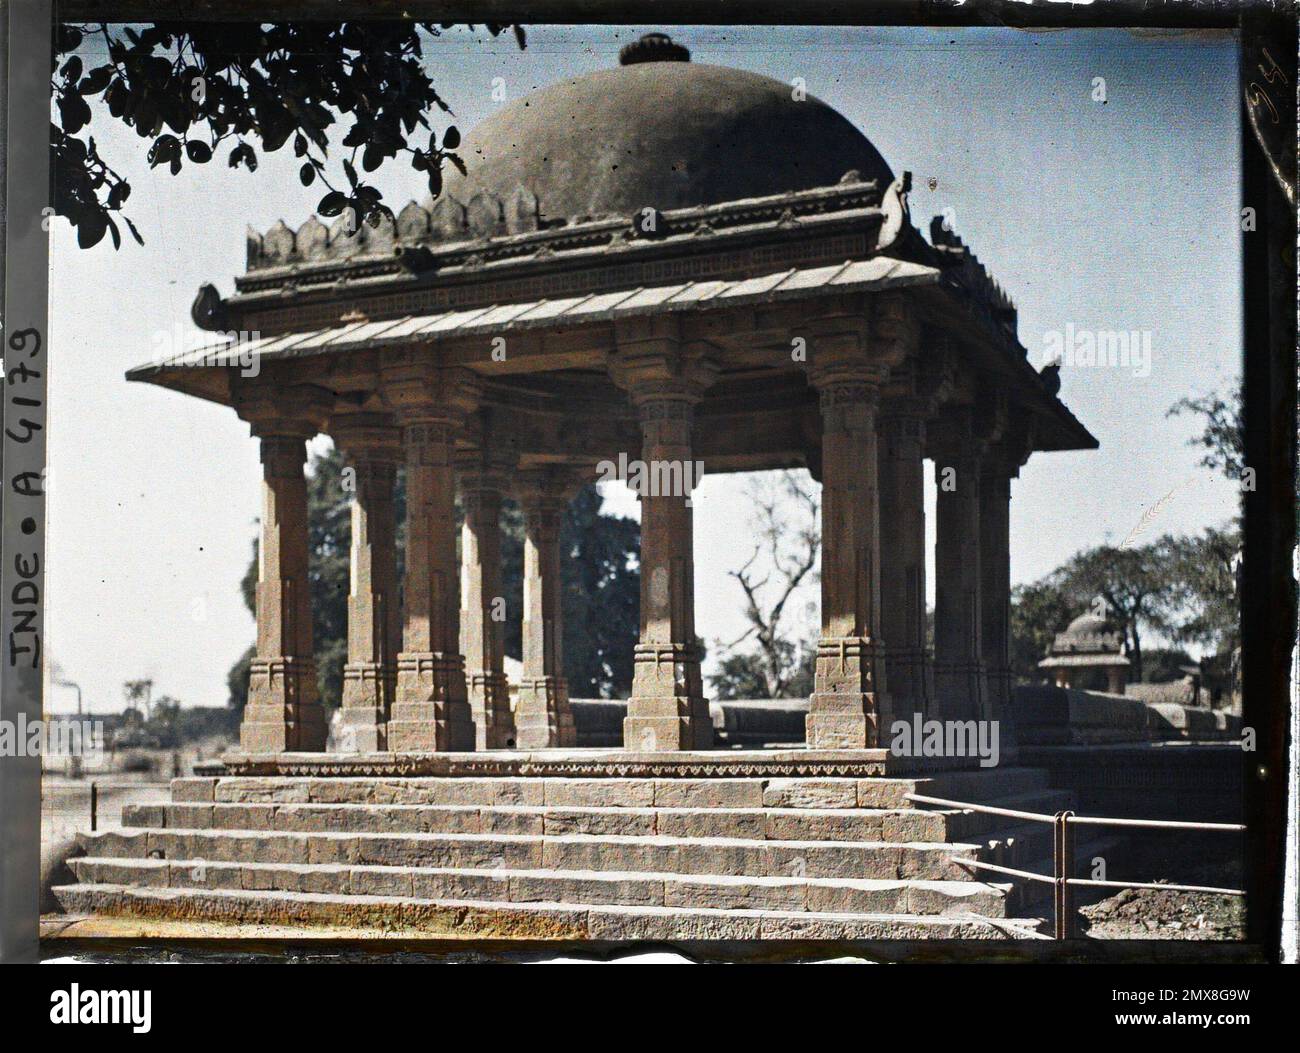 Ahmadabad, Indes Pavillon mit einer Kuppel, die den Eingang zum Brunnen Dada Harir Ni Vav (unterirdische Treppe) markiert, 1913-1914 - Indien, Pakistan - Stéphane Passet - (Dezember 16 - Januar 29) Stockfoto